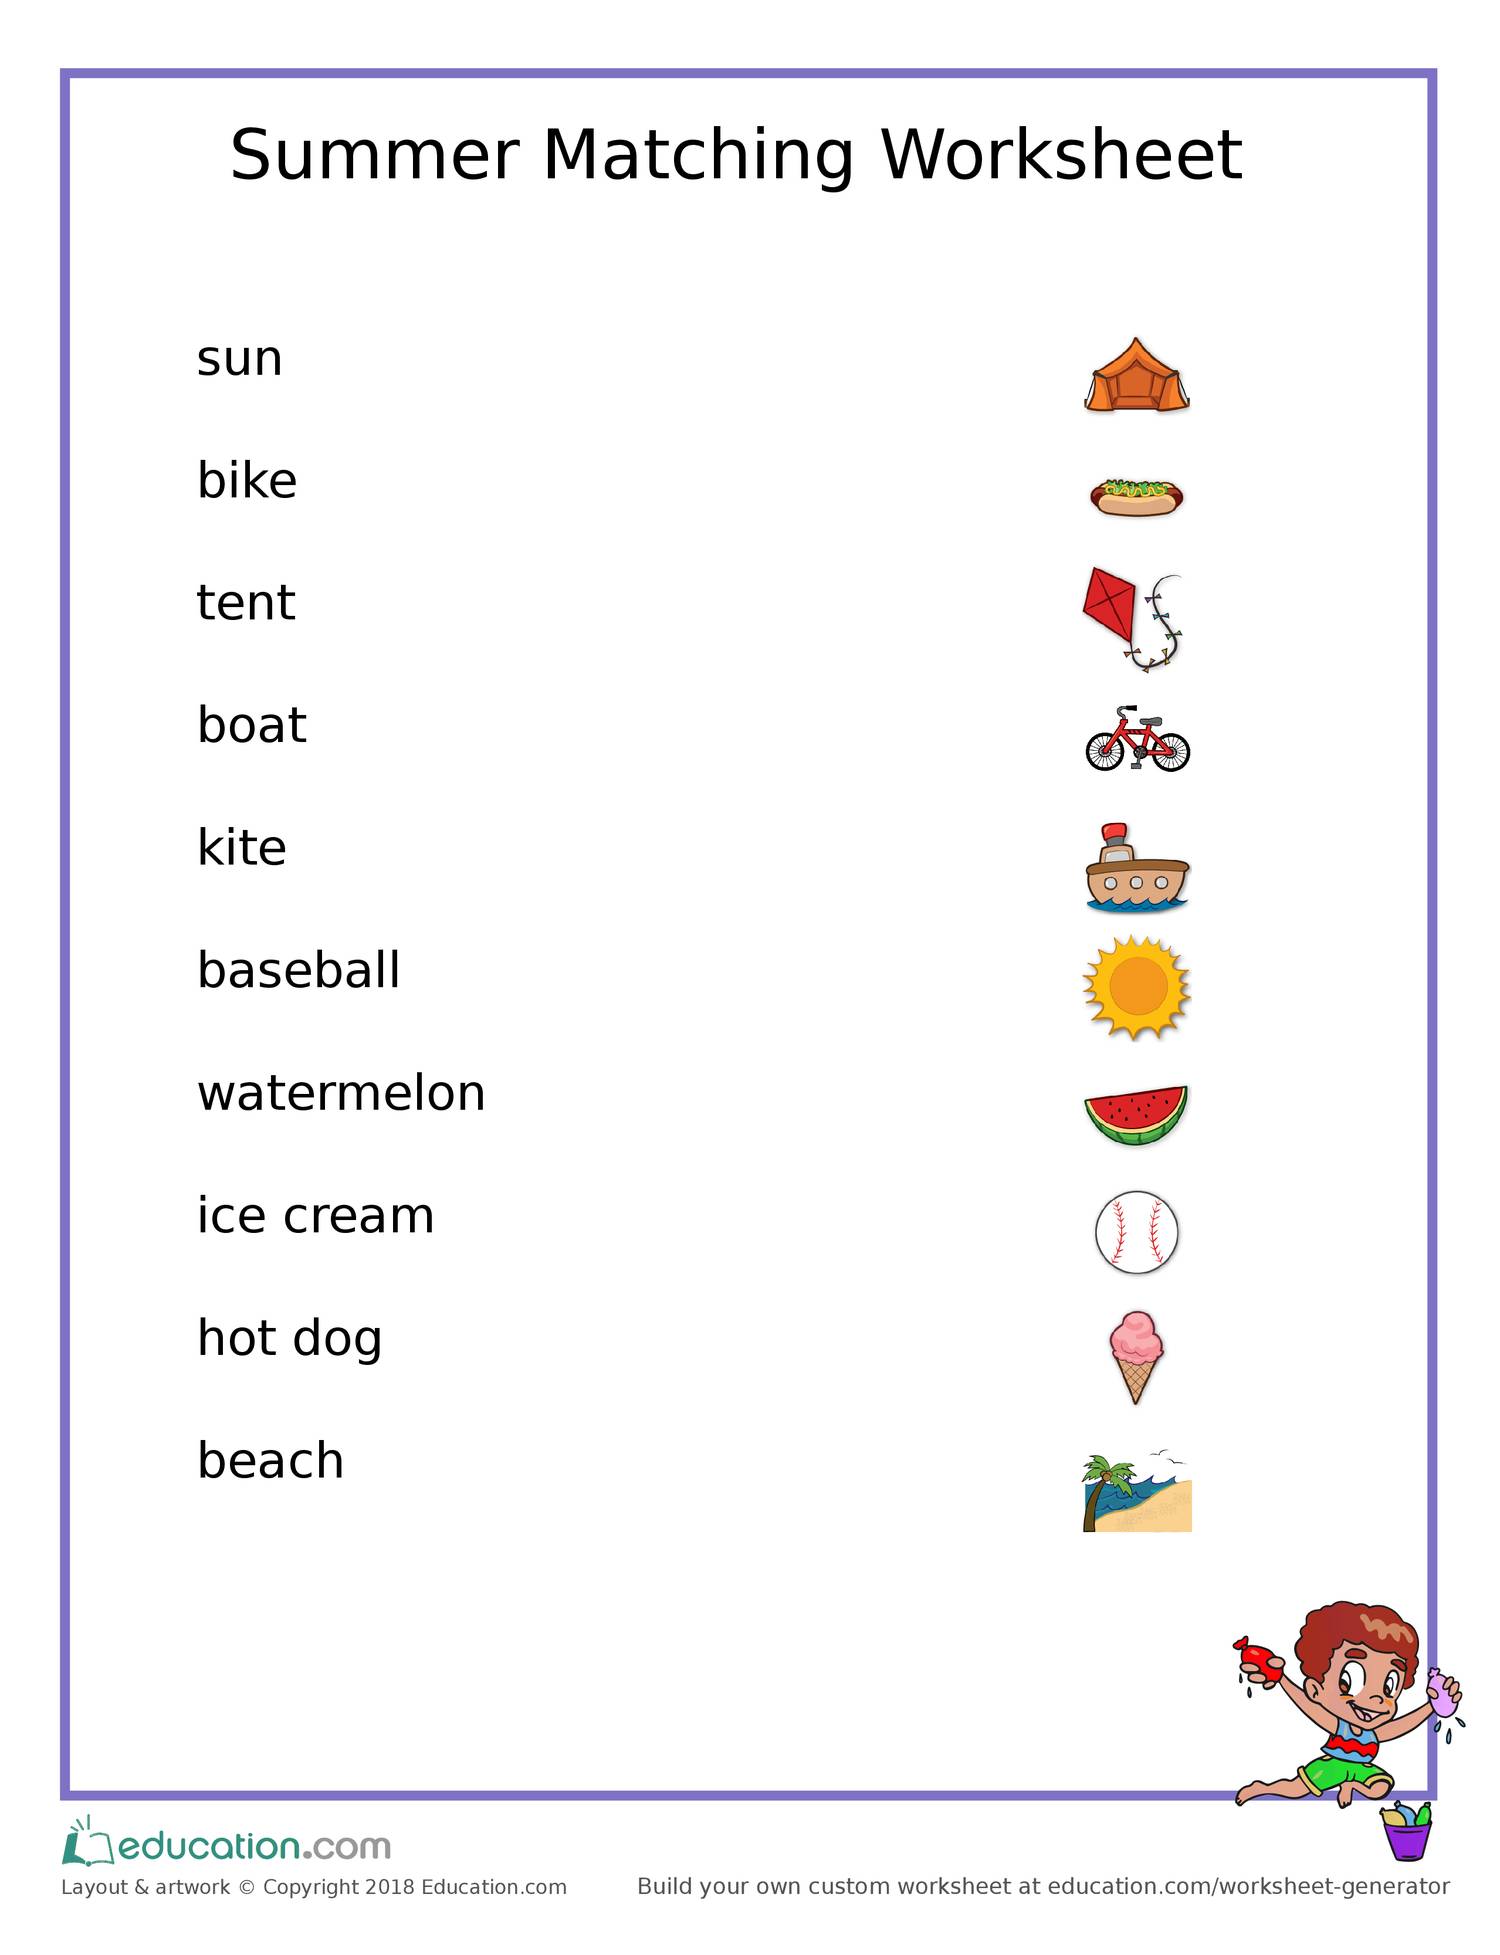 Match wordwall. Летние занятия на английском языке. Лето Worksheets. Праздники Worksheets for Kids. English Worksheets for Kids Summer.